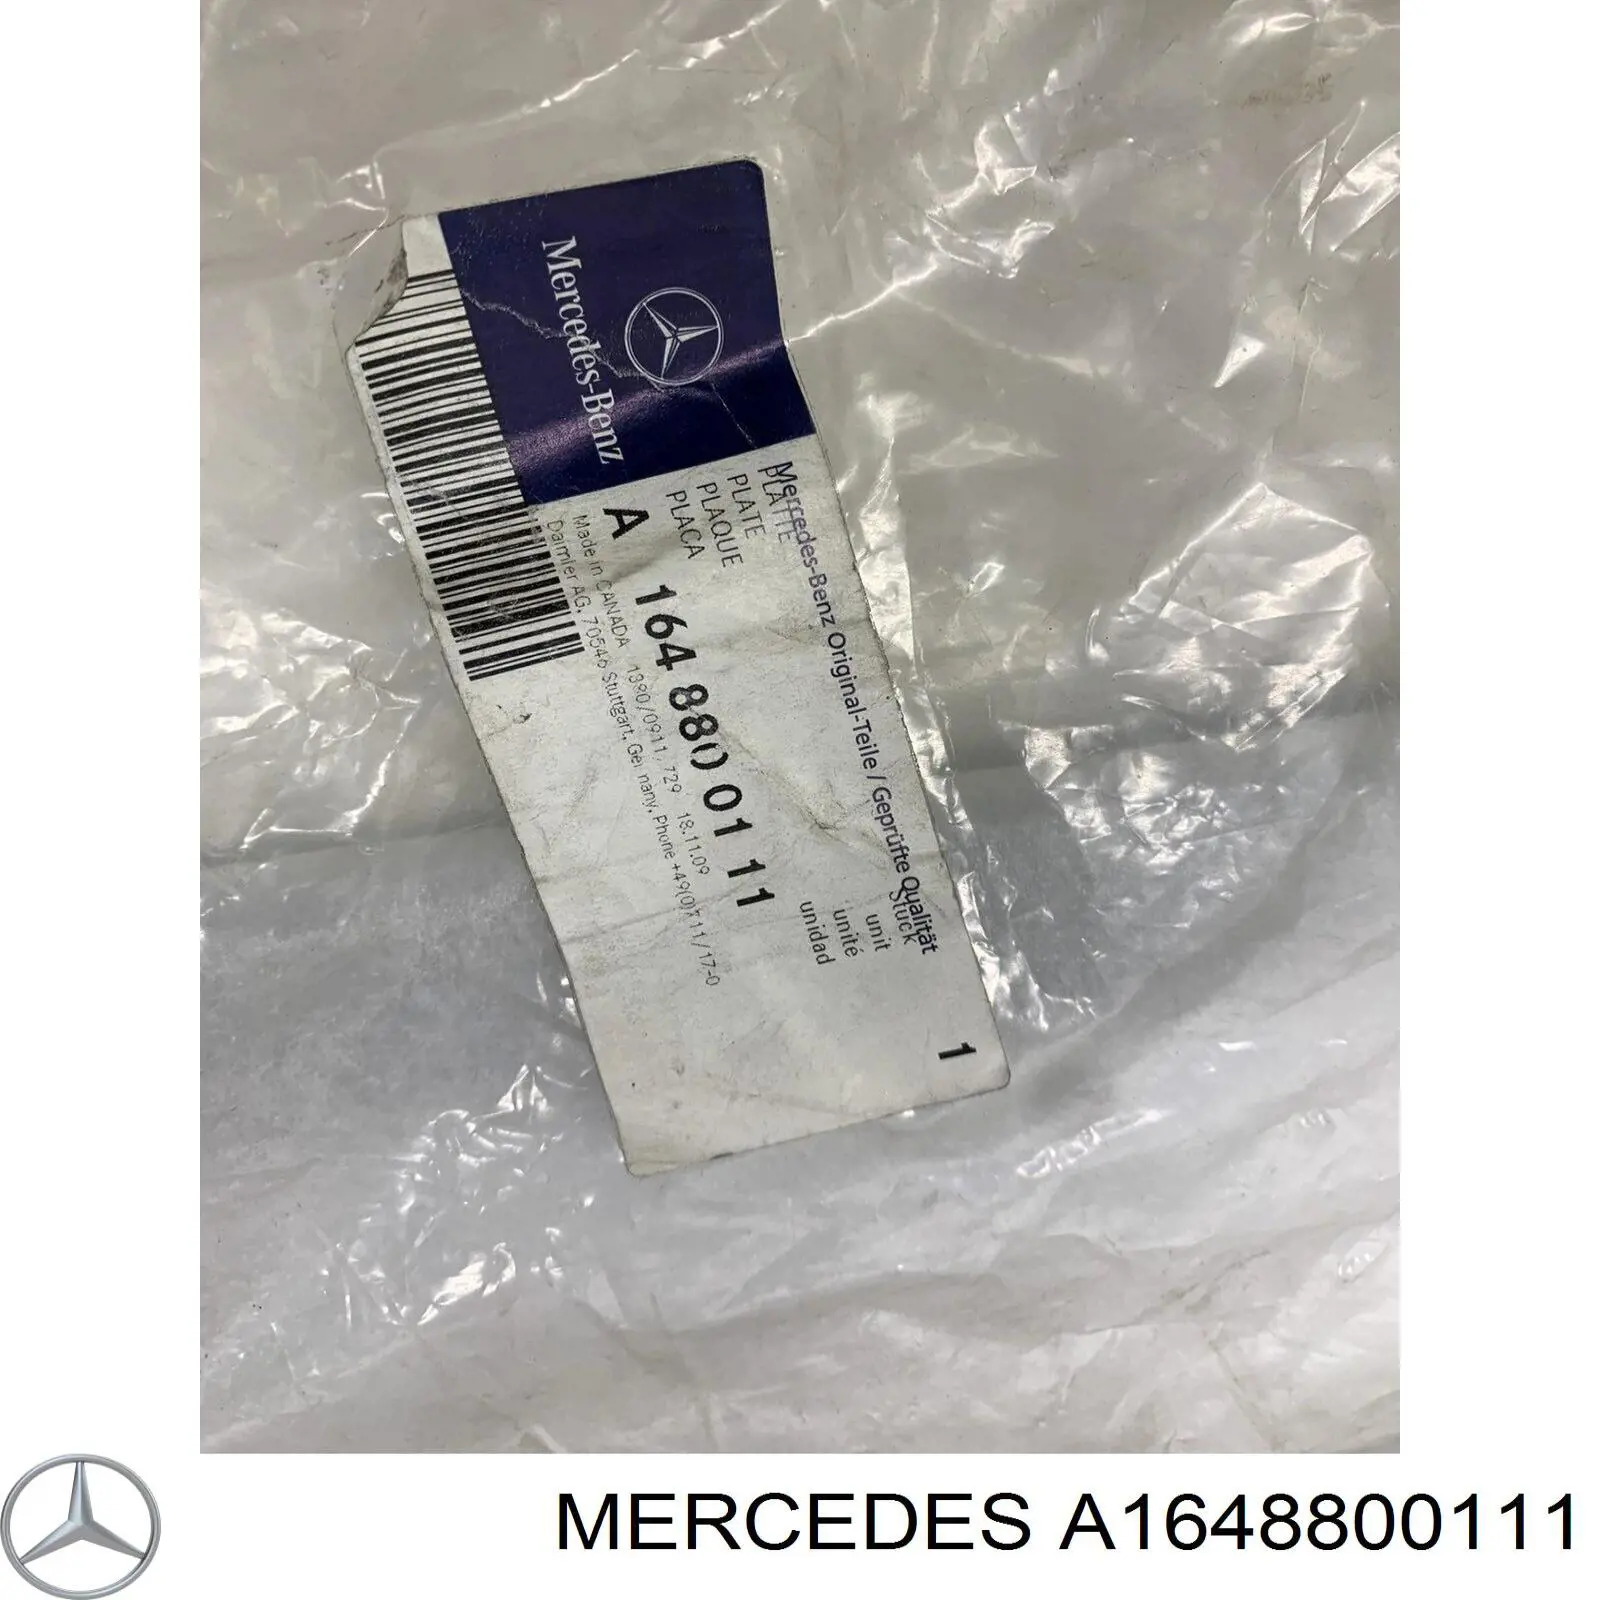 A1648800111 Mercedes listón protector, parachoques trasero superior (estribo)